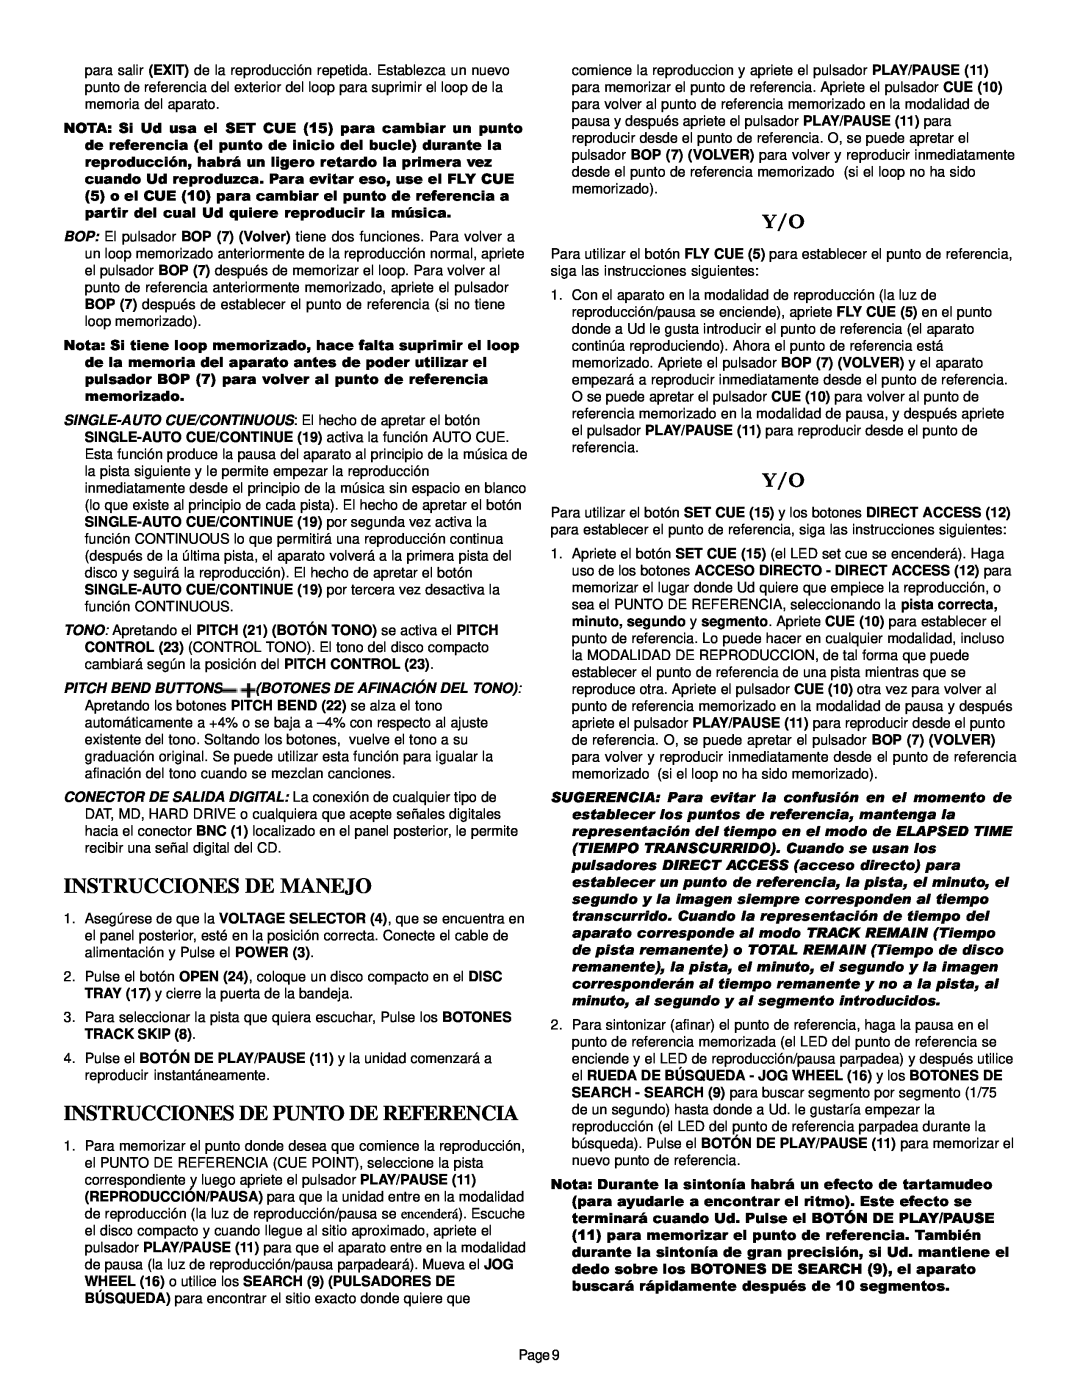 Gemini CDJ-30 manual Instrucciones De Manejo, Instrucciones De Punto De Referencia 